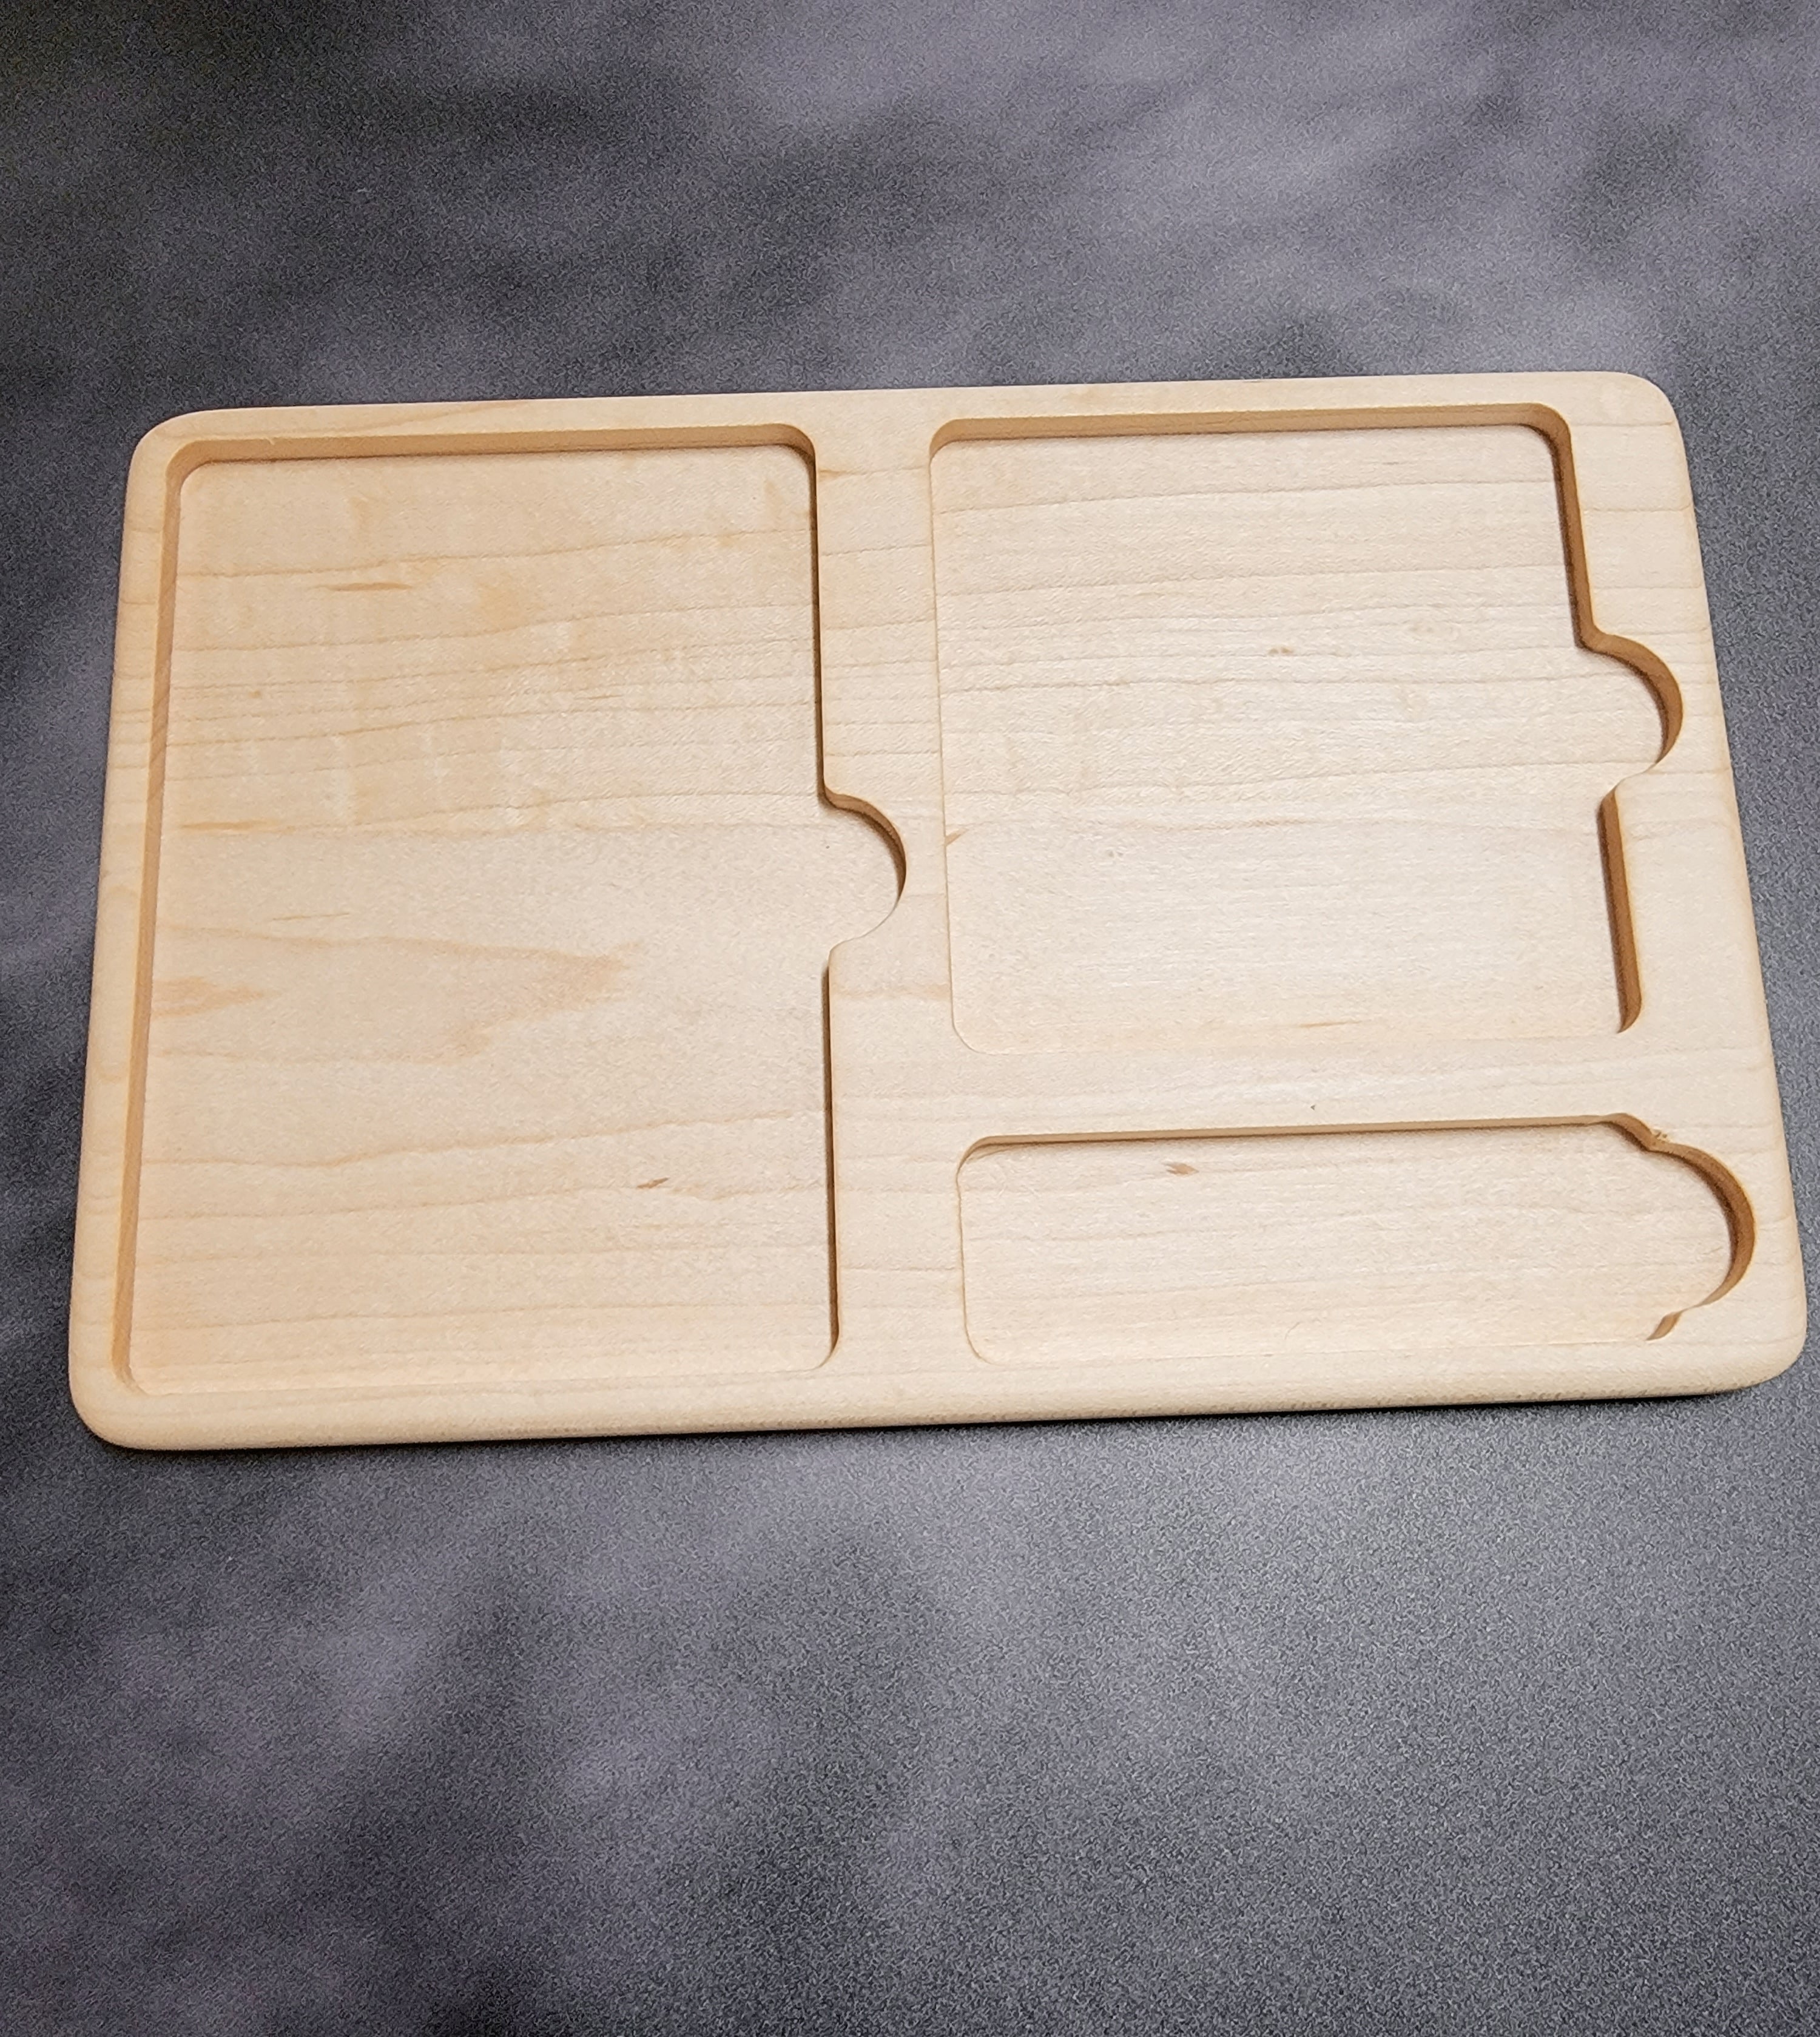 Montessori 3 part card tray